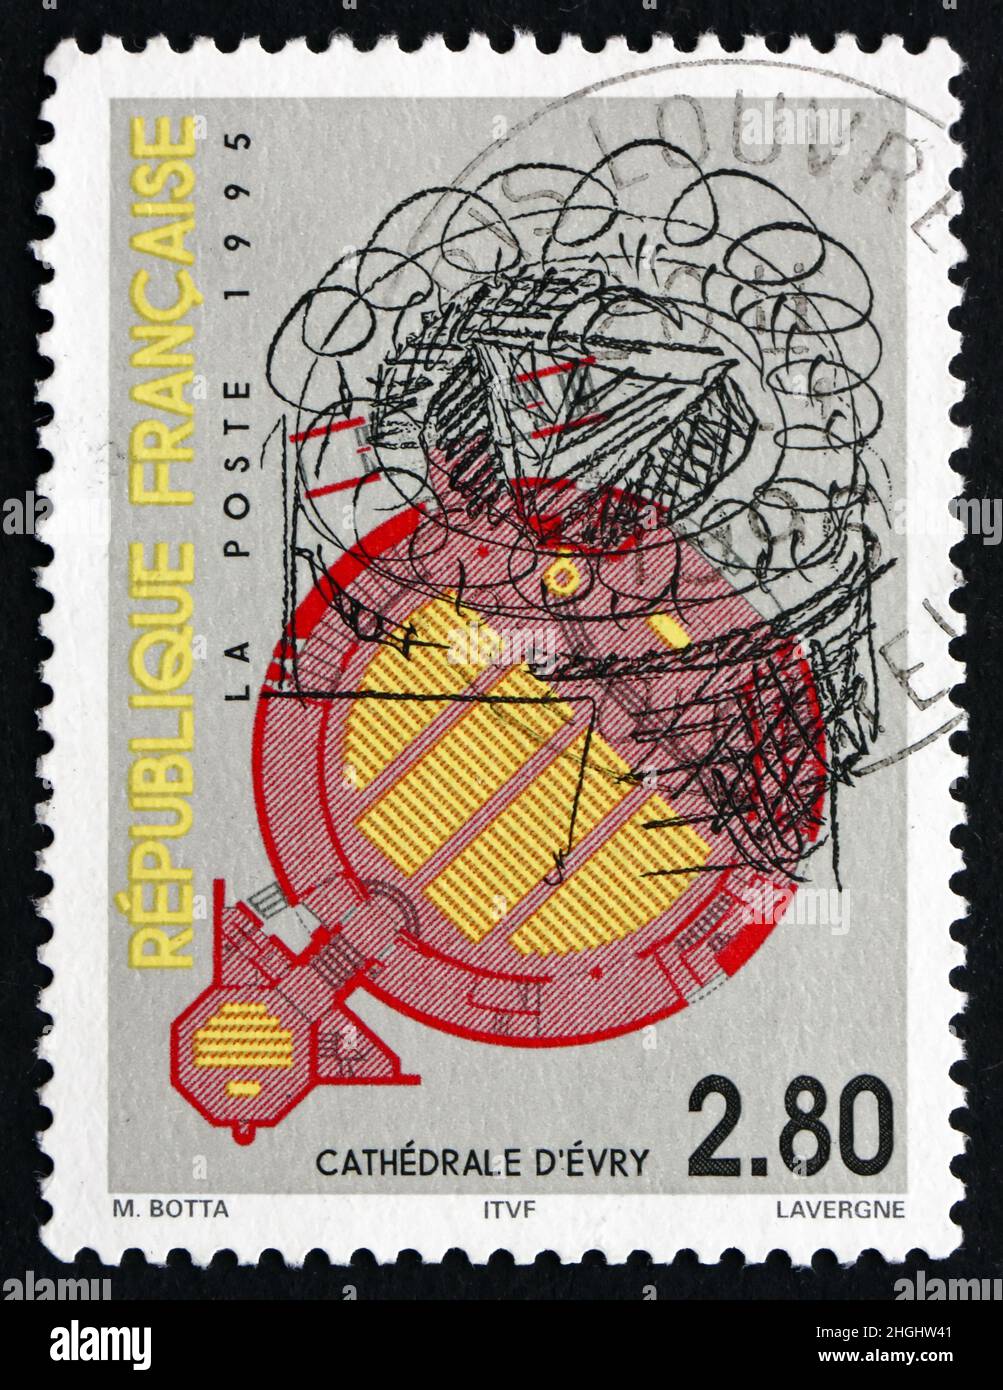 FRANKREICH - UM 1995: Eine in Frankreich gedruckte Briefmarke zeigt die Kathedrale von Evry, Saint Corbinian, die Kathedrale des 20th. Jahrhunderts, um 1995 Stockfoto